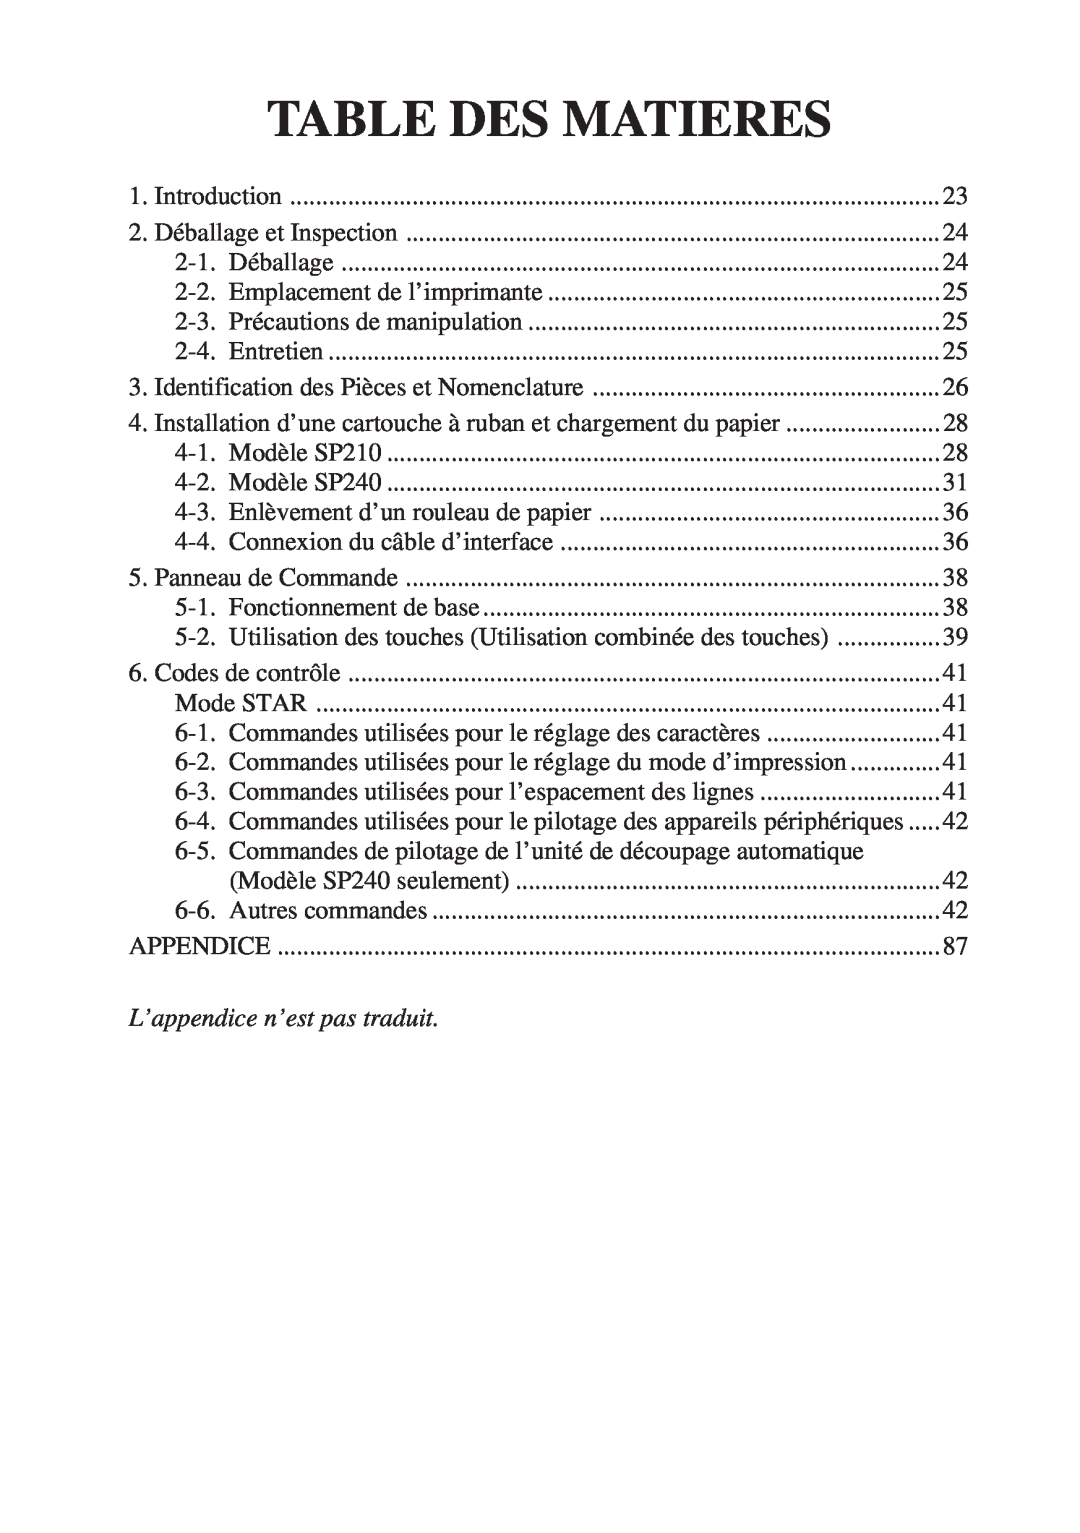 Star Micronics SP200F user manual Table Des Matieres, L’appendice n’est pas traduit, Français 